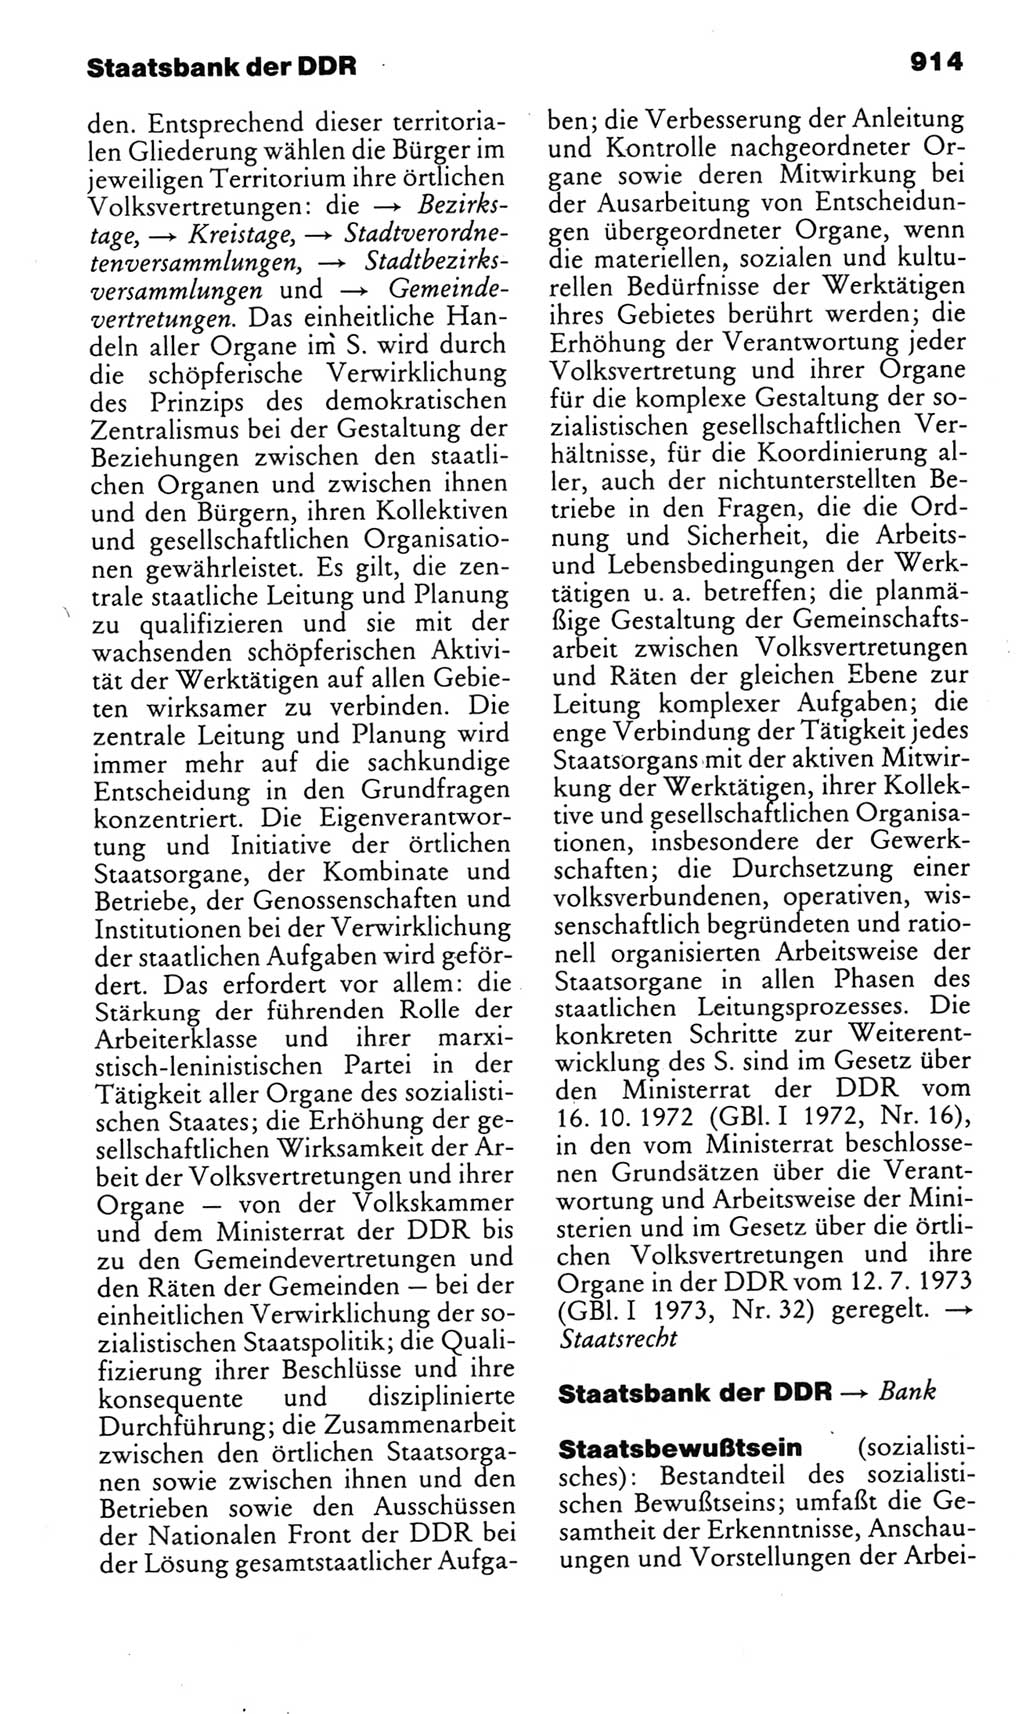 Kleines politisches Wörterbuch [Deutsche Demokratische Republik (DDR)] 1985, Seite 914 (Kl. pol. Wb. DDR 1985, S. 914)